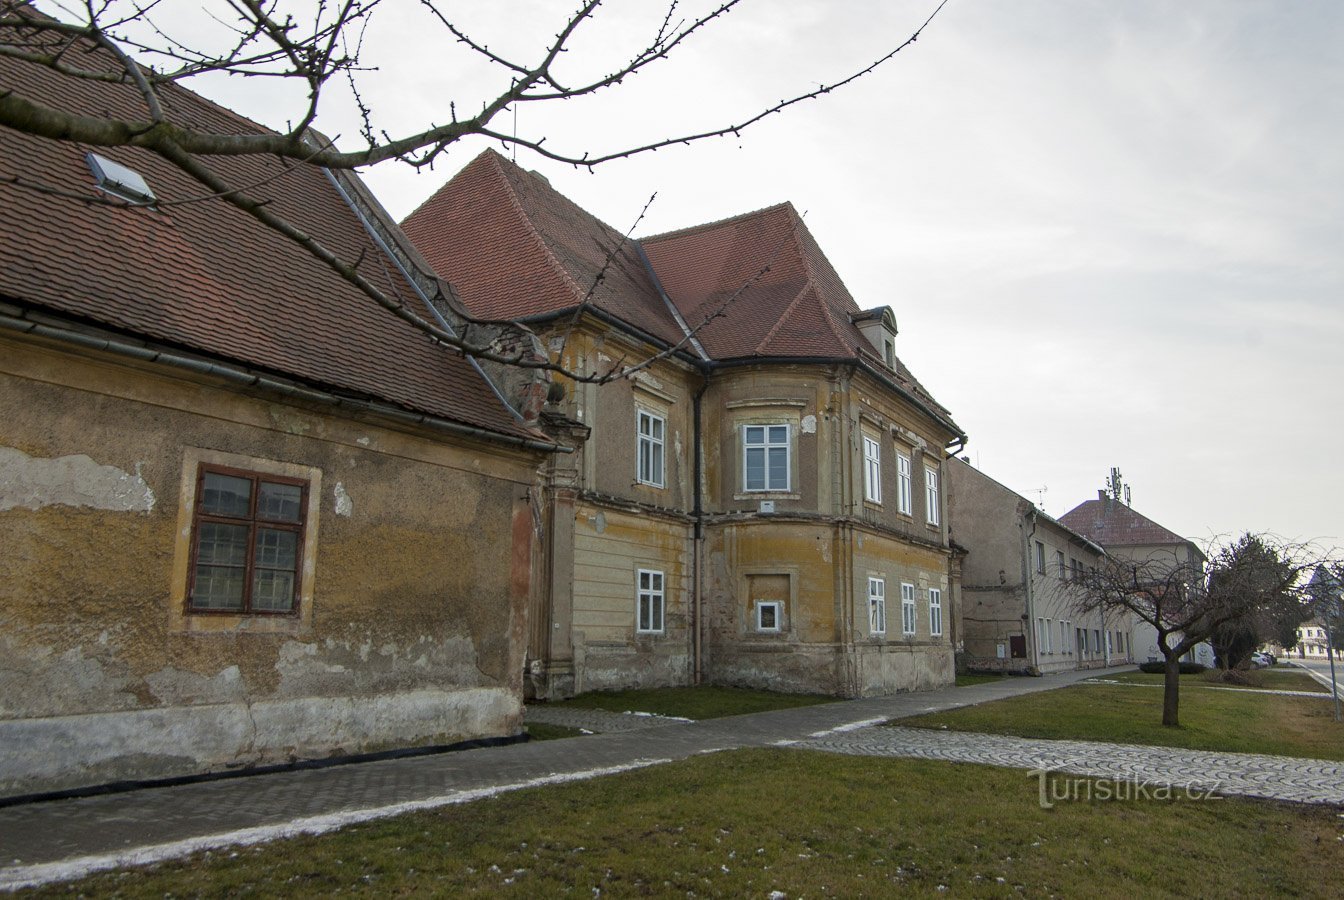 Náklo - rectoría, originalmente una casa de verano barroca